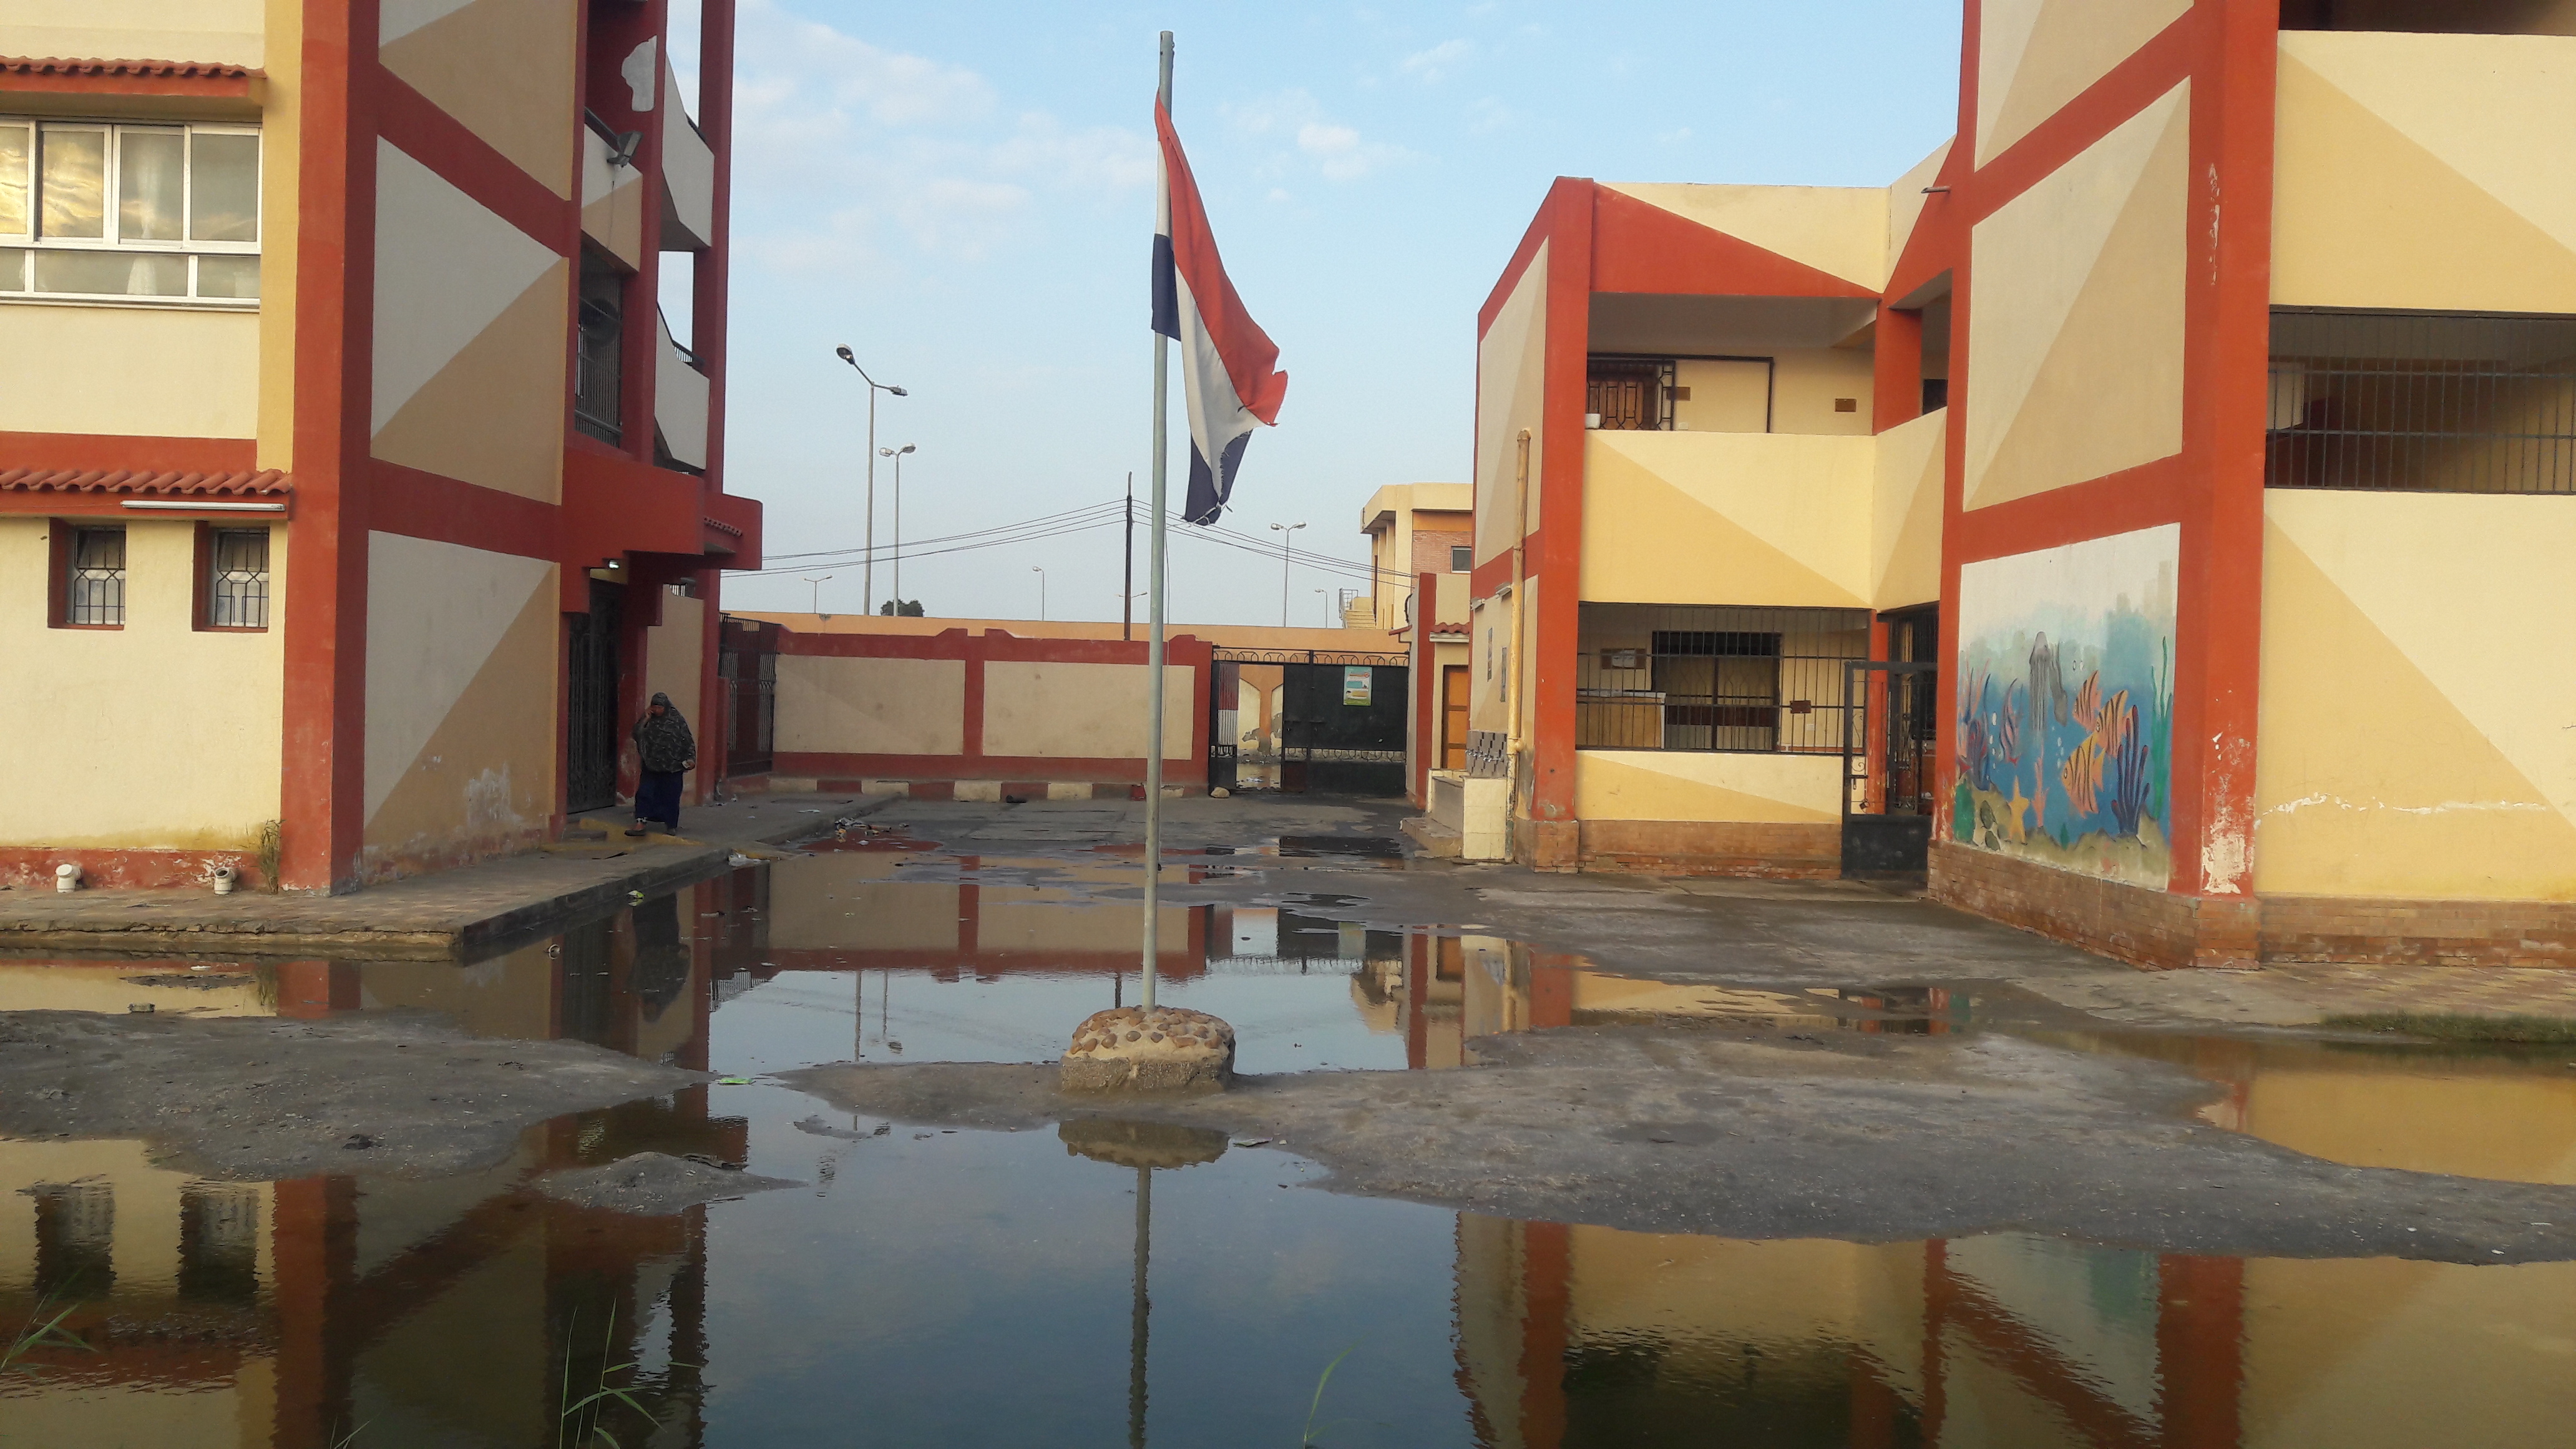 ٢٠١٩٠٣٠٢مدرسة ببورسعيد تغرق فى مياه المجارى .. واعمدة الكهرباء تهدد أرواح التلاميذ_١٦٥٠٤٤